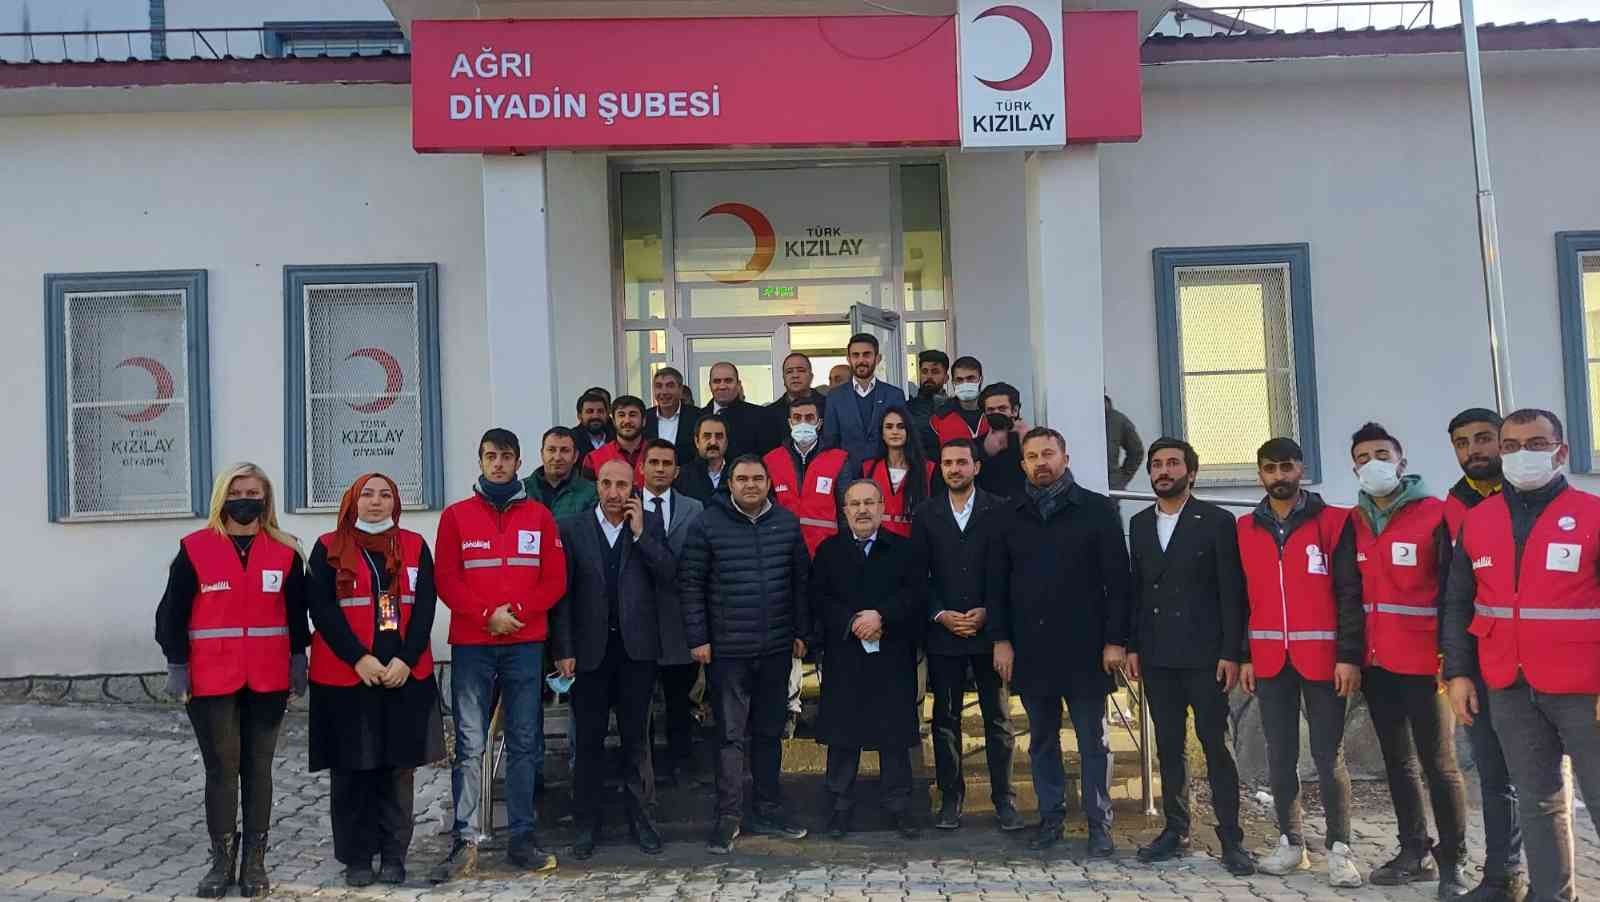 Türk Kızılay’ı Diyadin’de hizmet vermeye başladı #agri